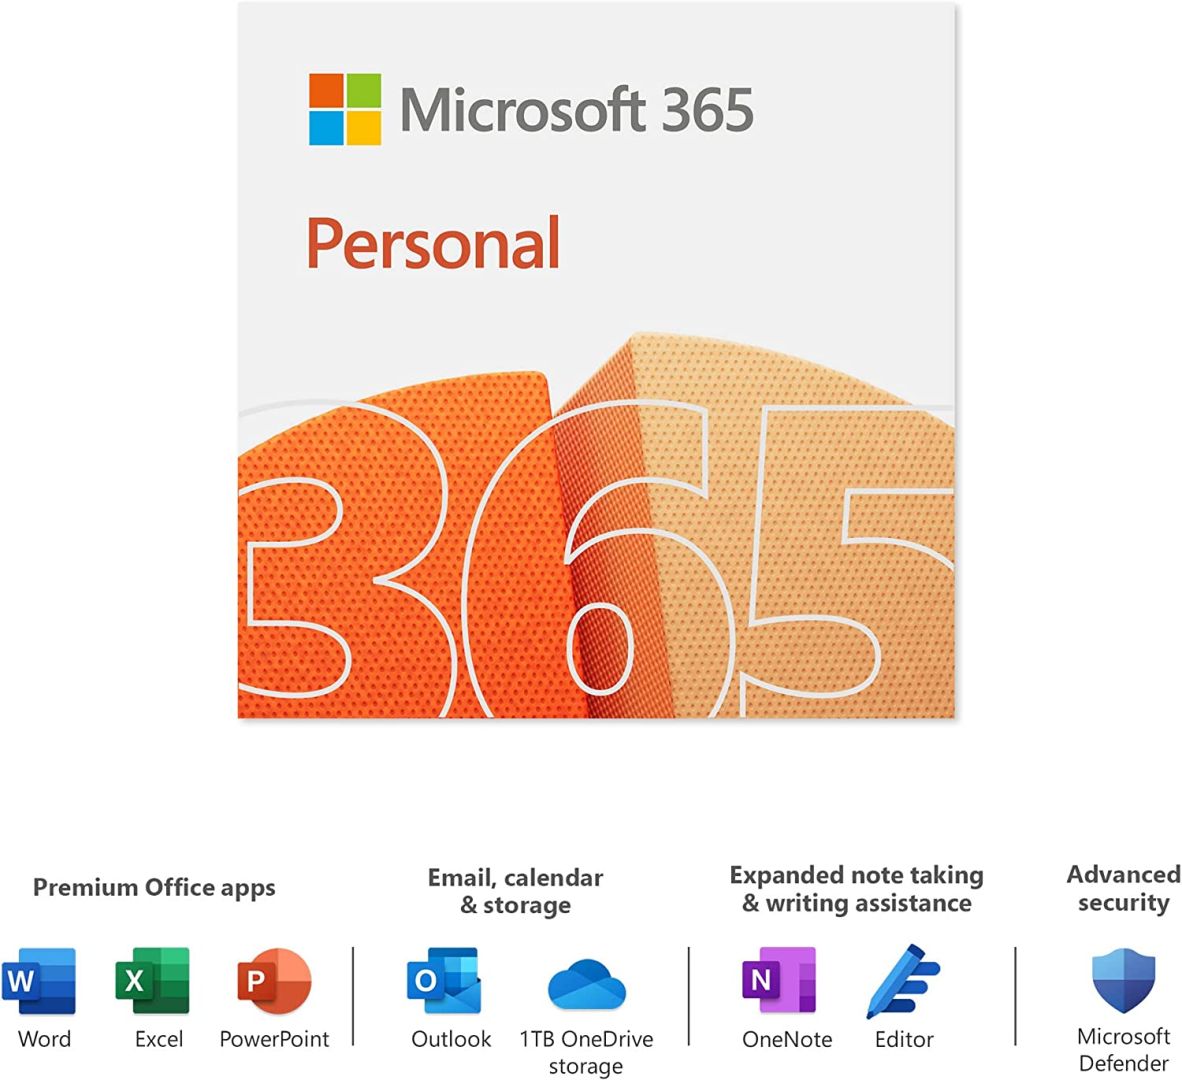 მაიკროსოფტის პროგრამები-Microsoft 365 Personal 